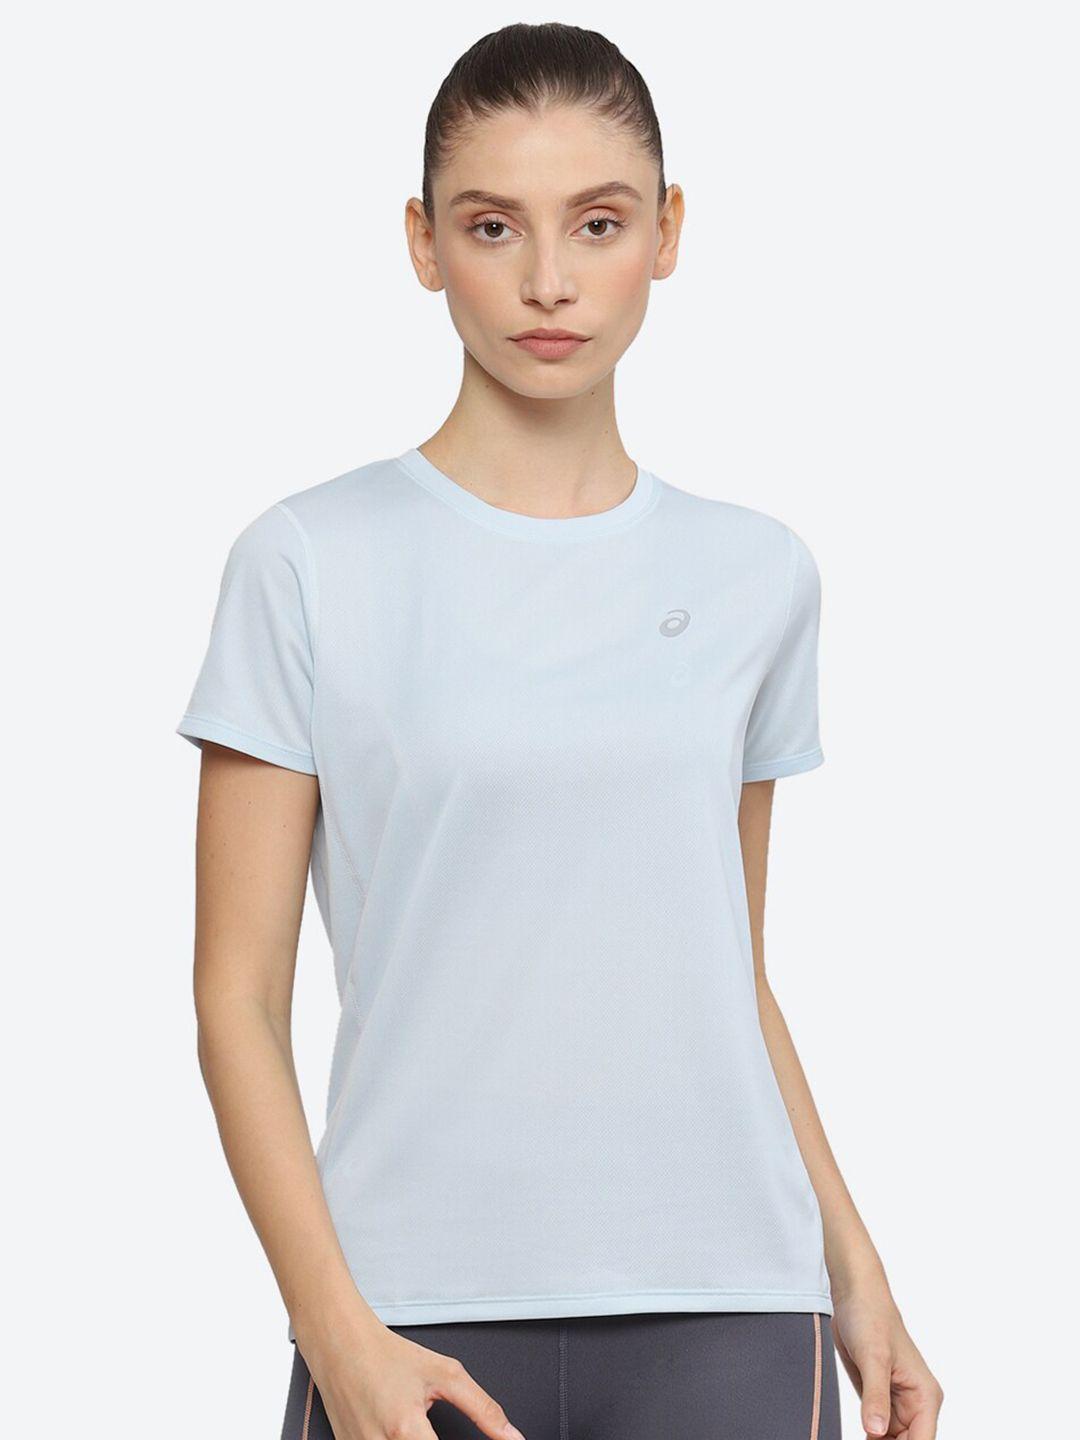 asics-women-extended-sleeves-t-shirt